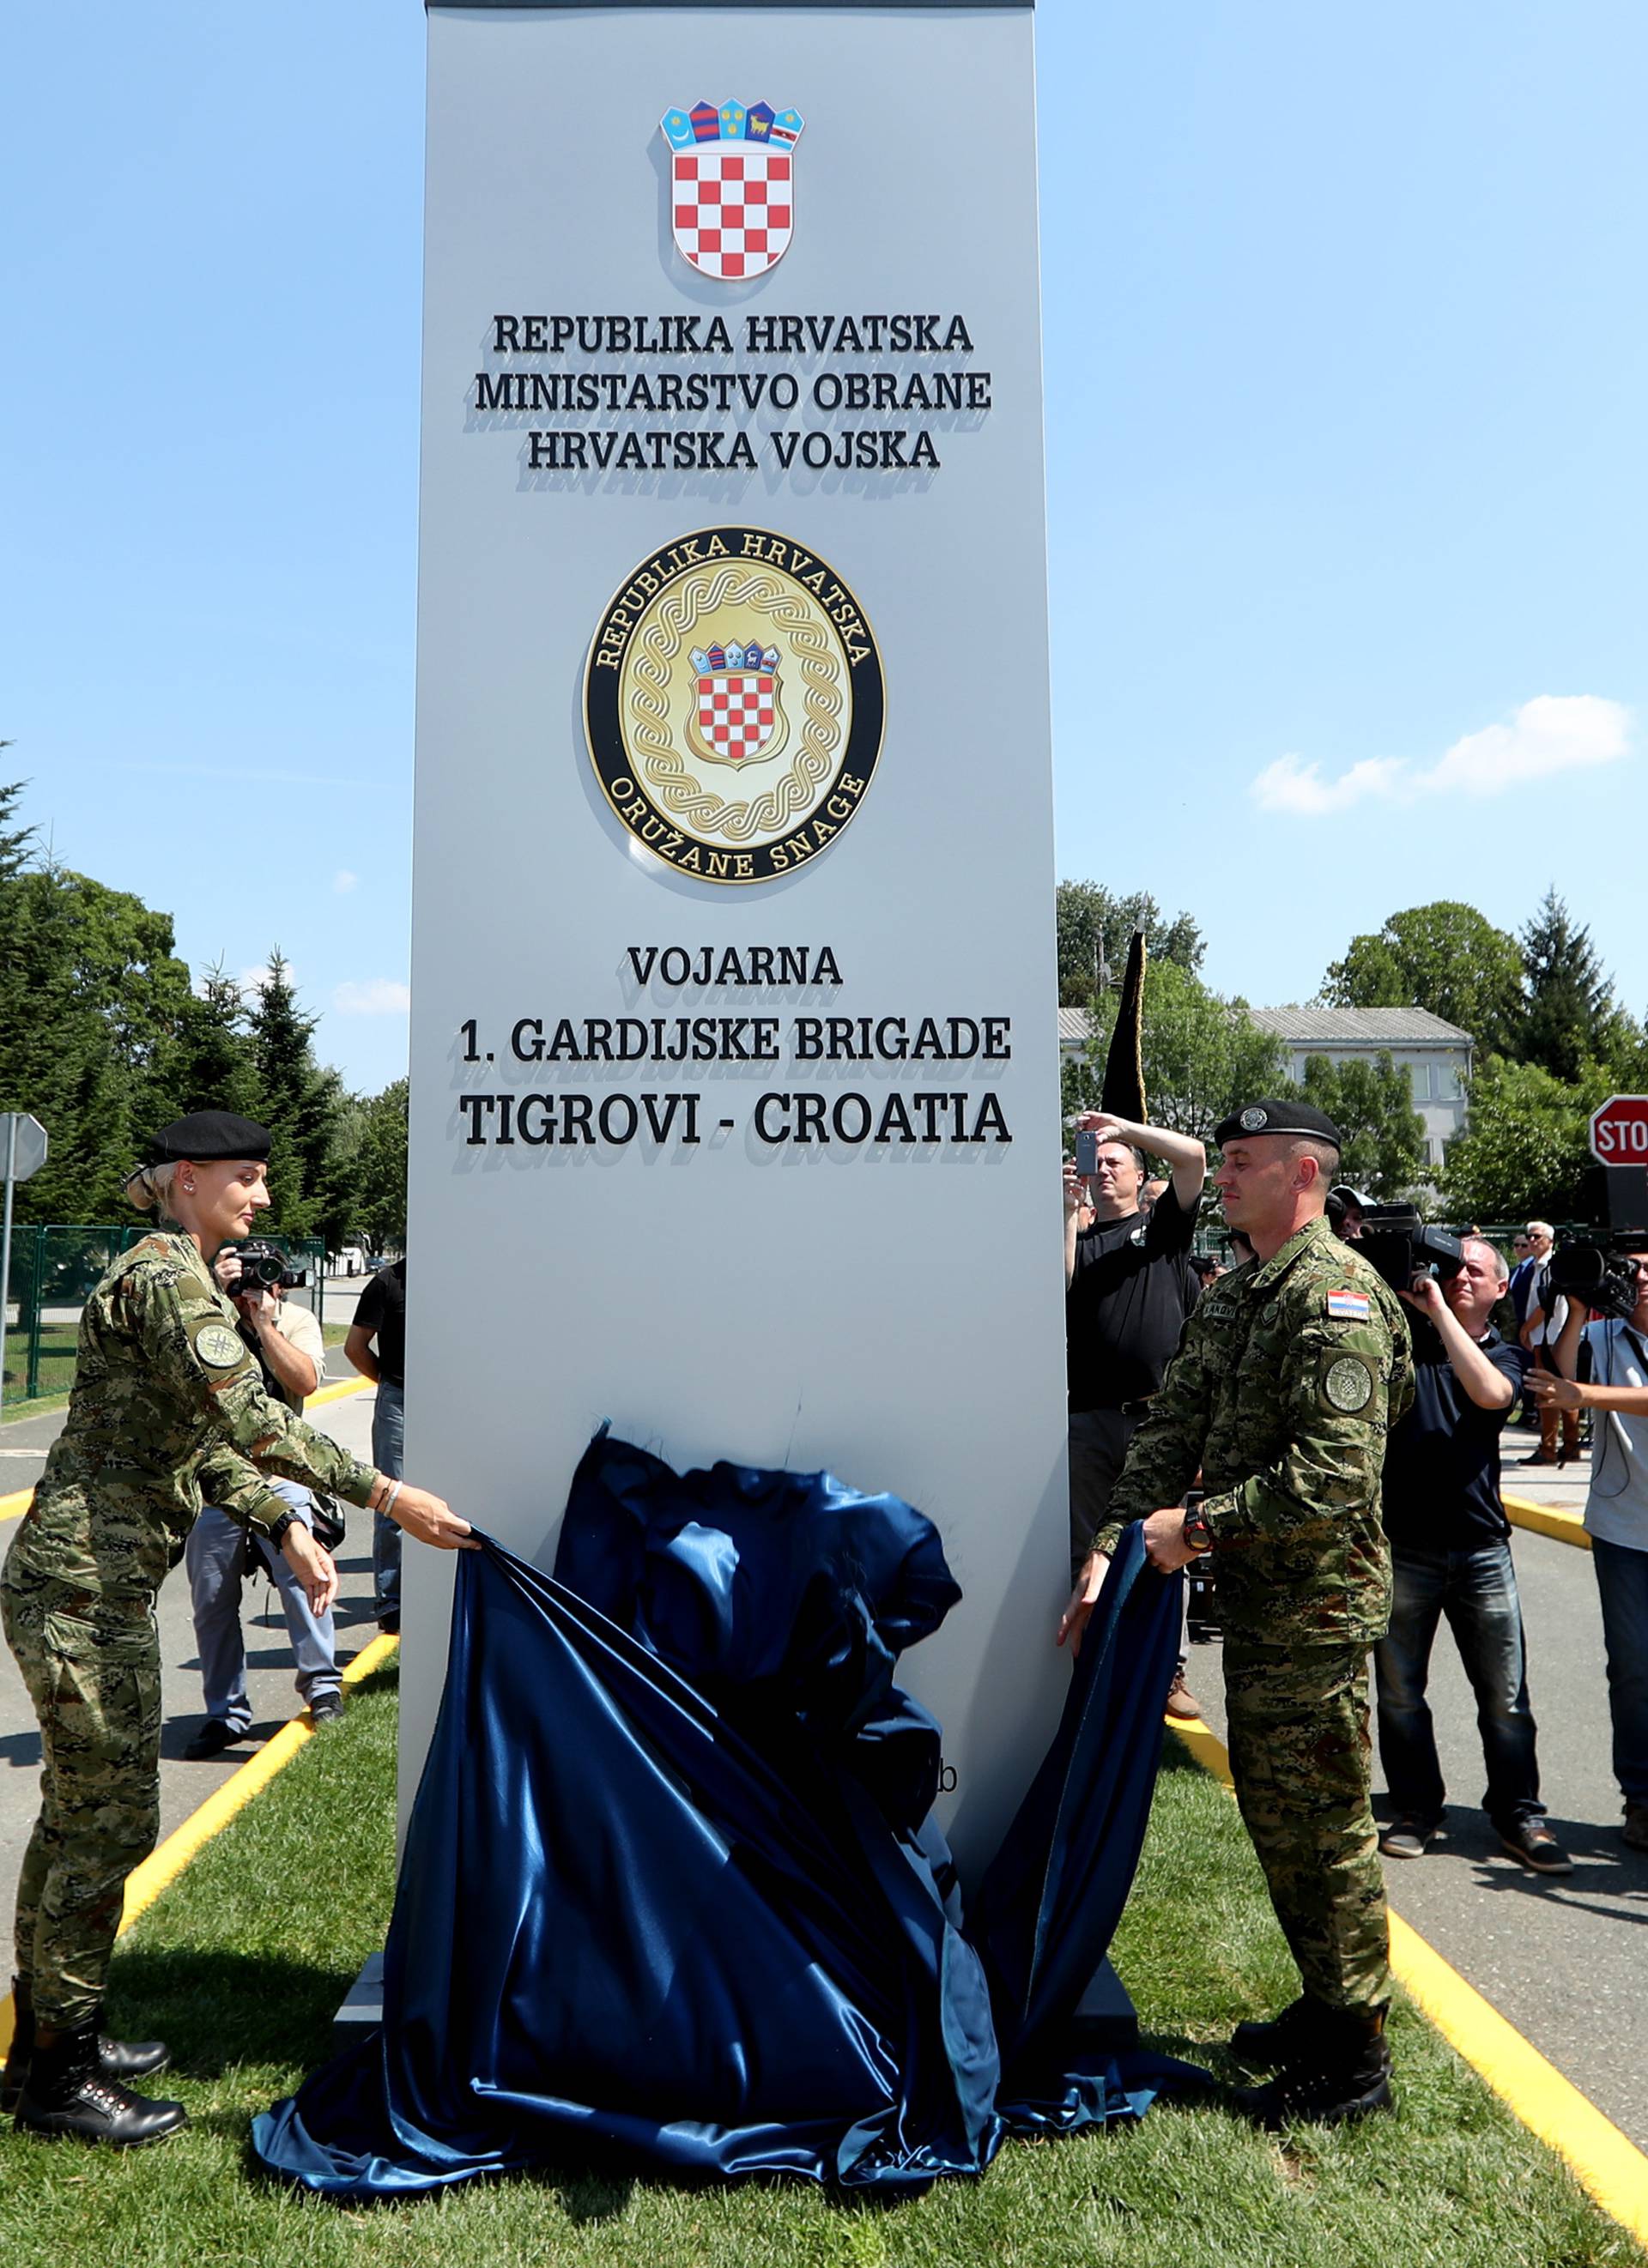 Zagreb: SveÄanost imenovanja vojarne  Croatia  imenom 1. gardijska brigada Tigrovi